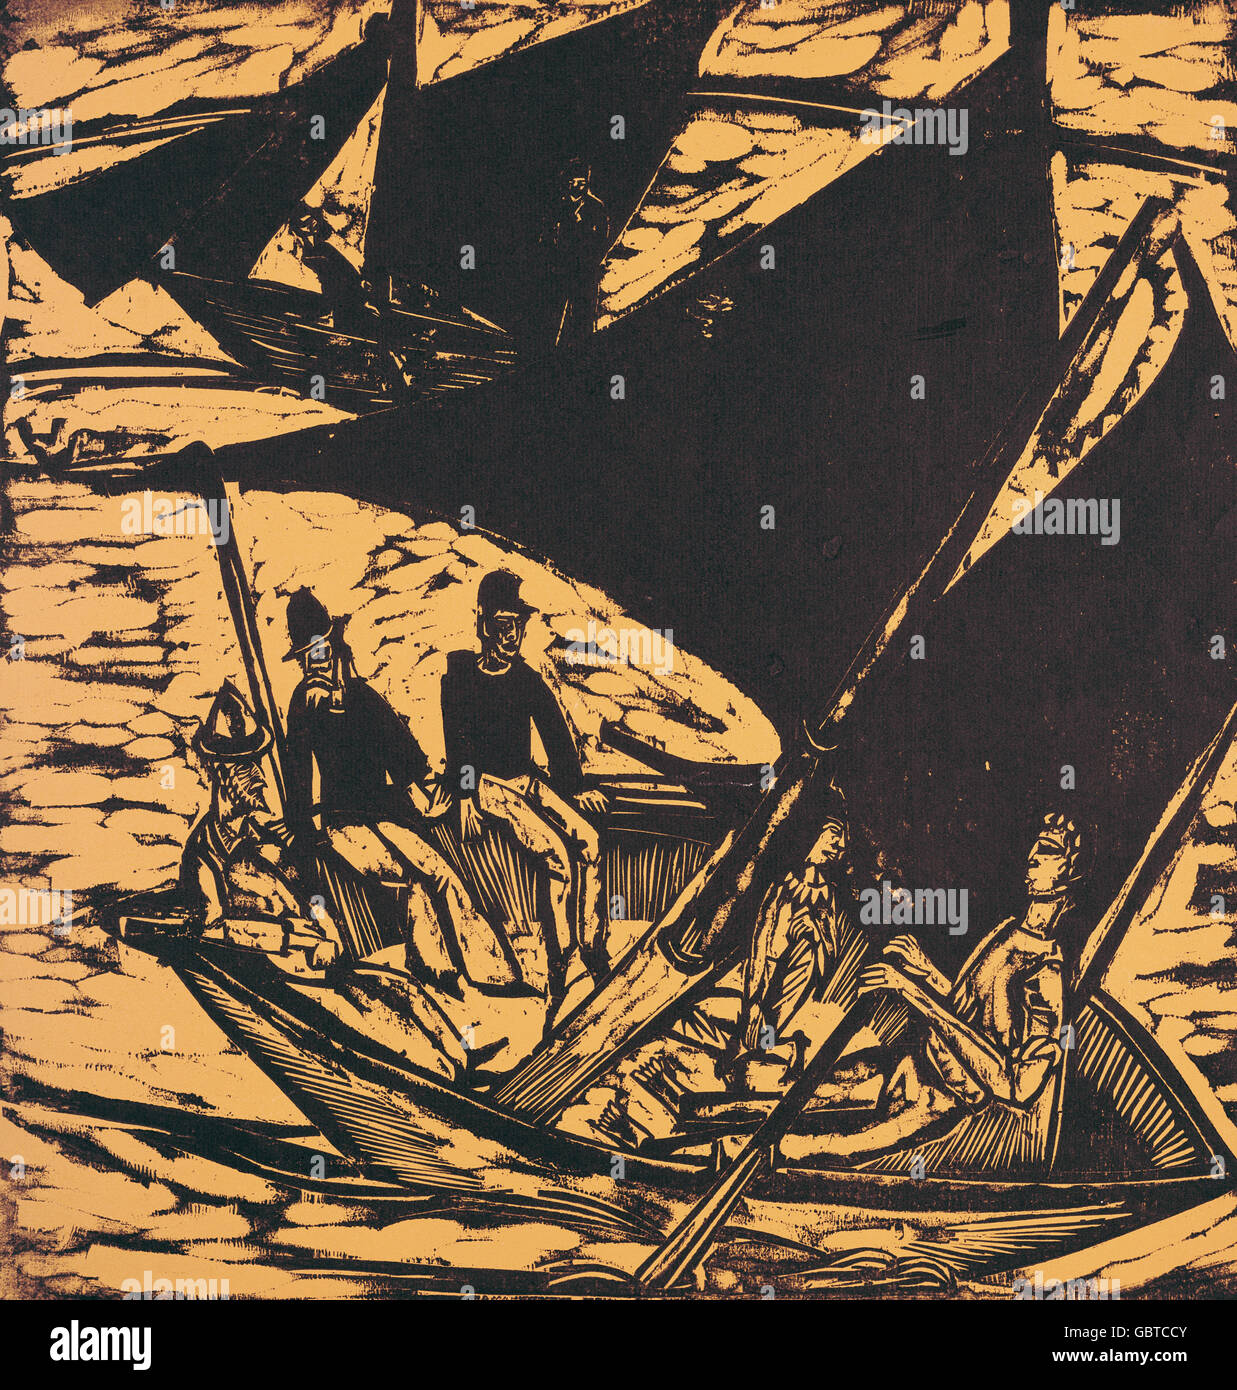 Bei Segelboote Fehmarn par Ernst Ludwig Kirchner, 1914 Banque D'Images